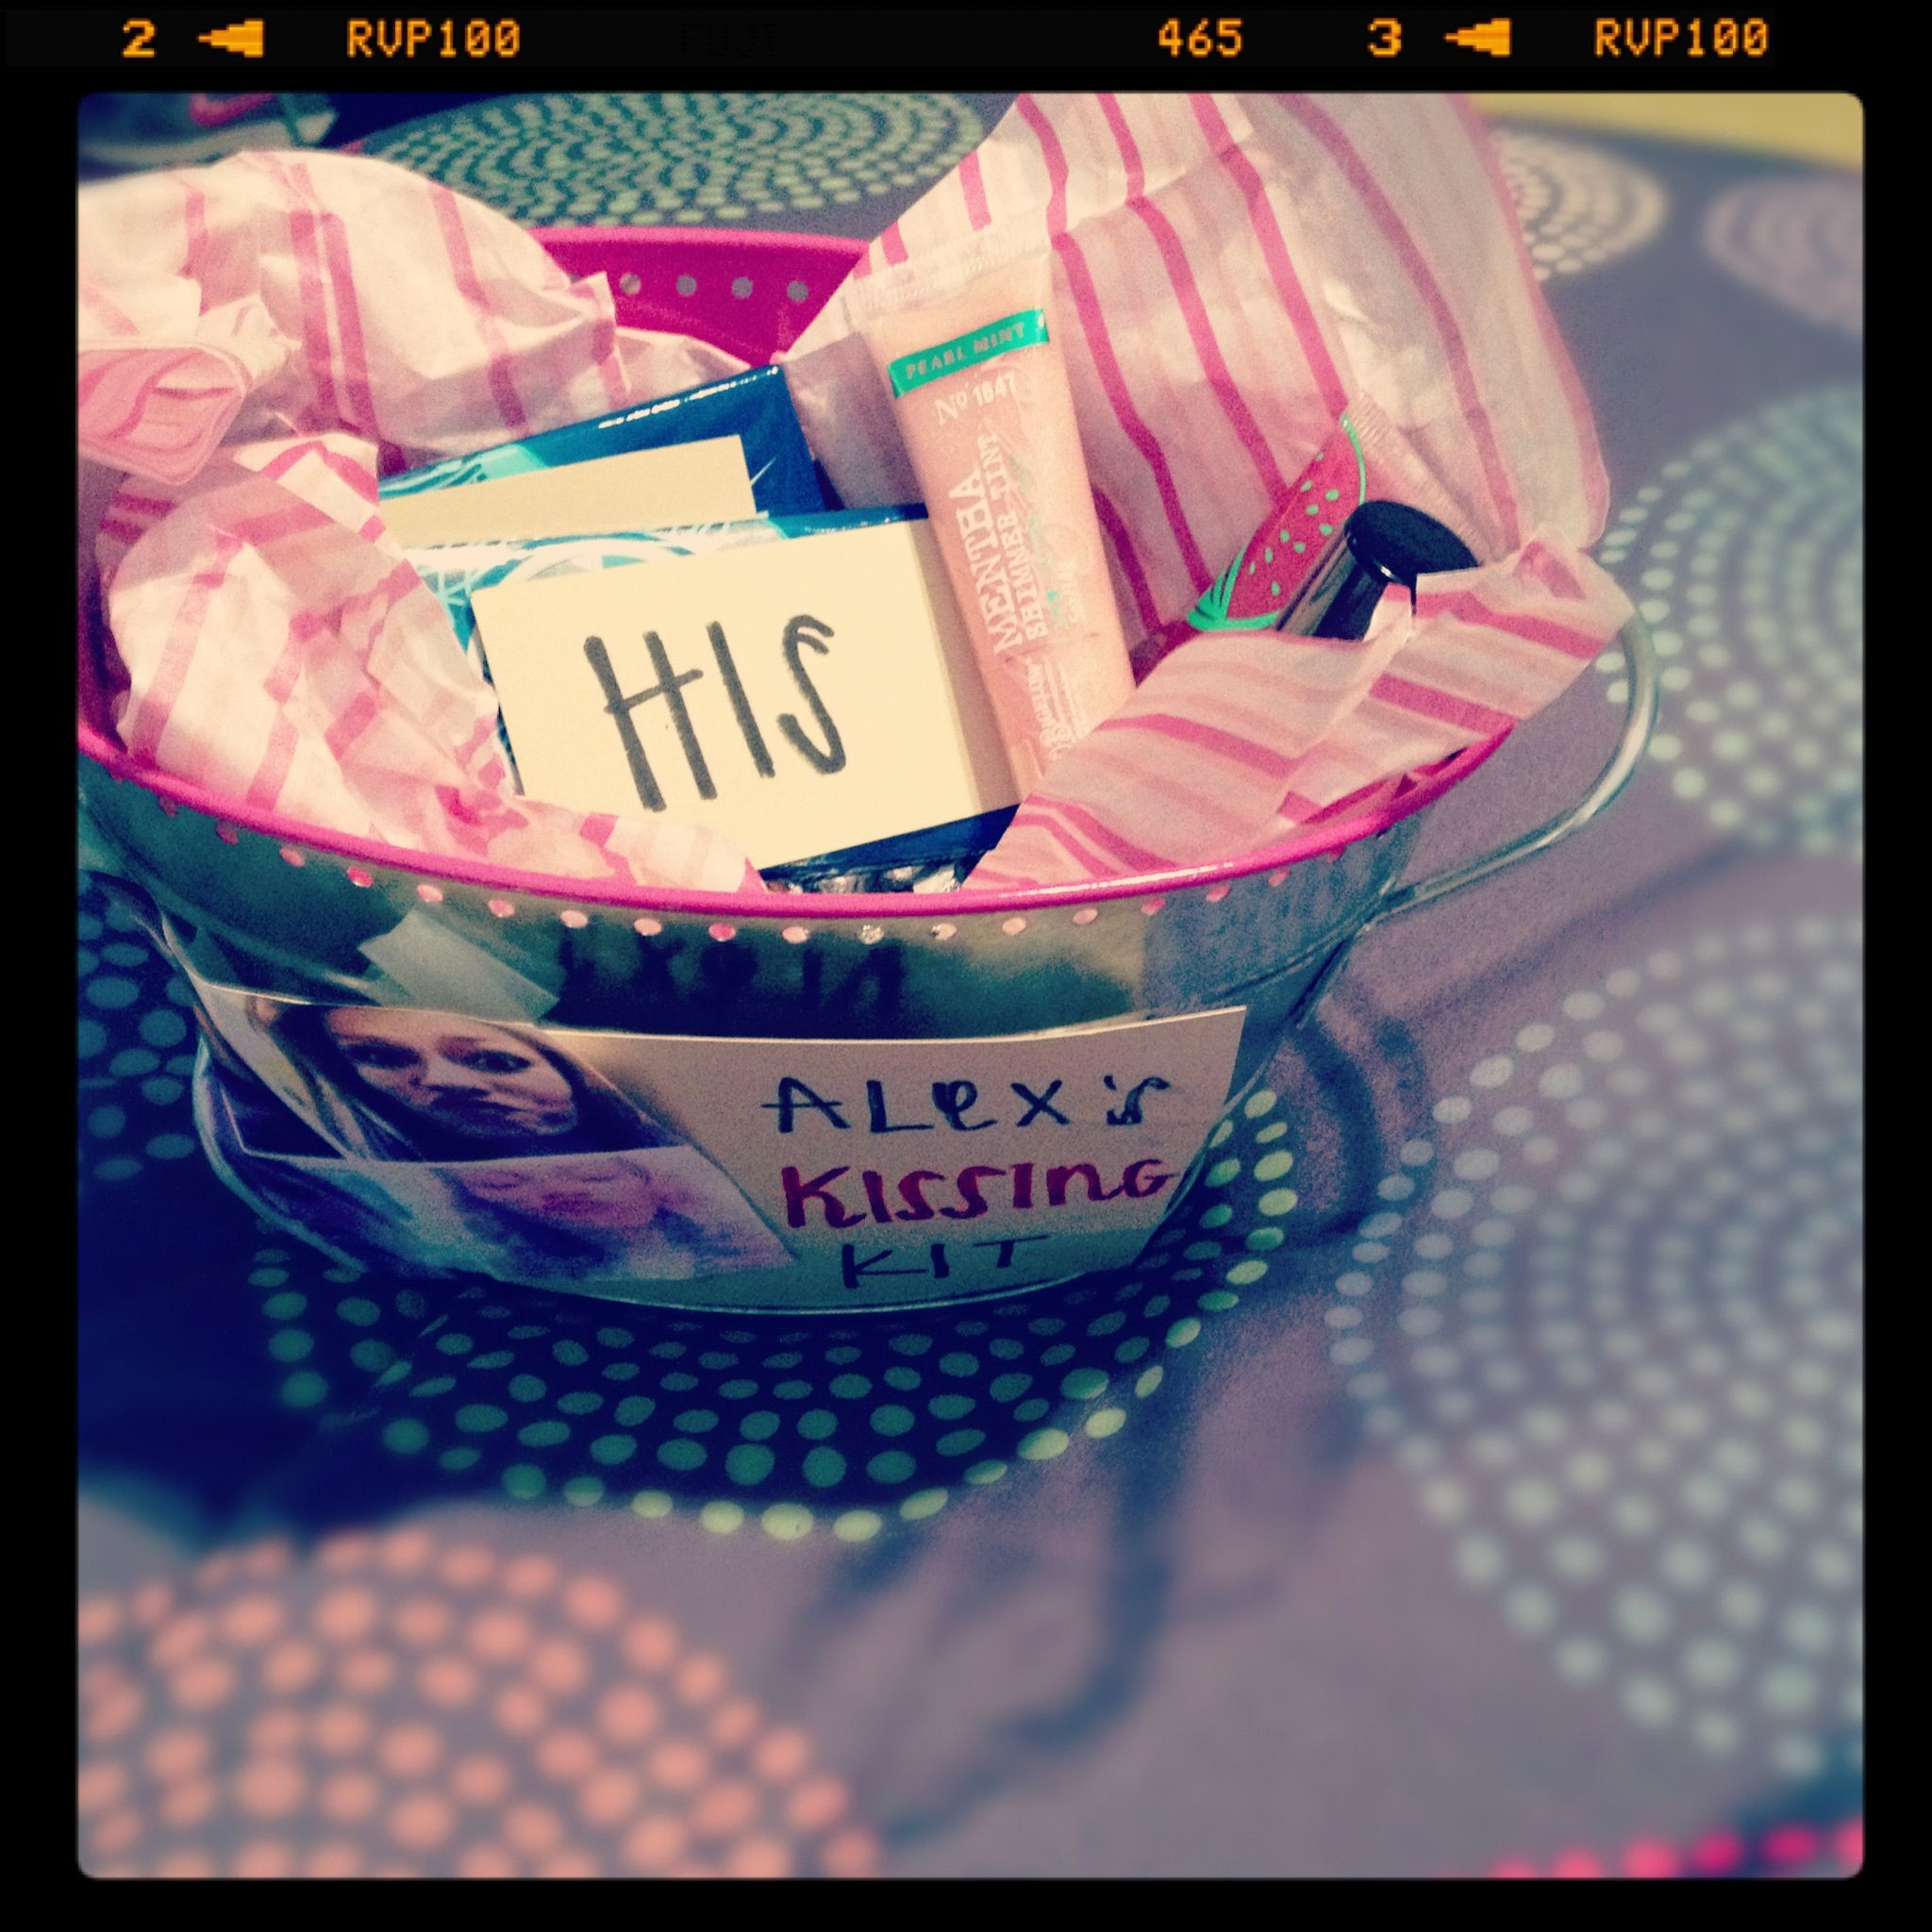 Sweet 16 Gift Ideas For Best Friend
 Sweet 16 kissing kit made by my cute best friend